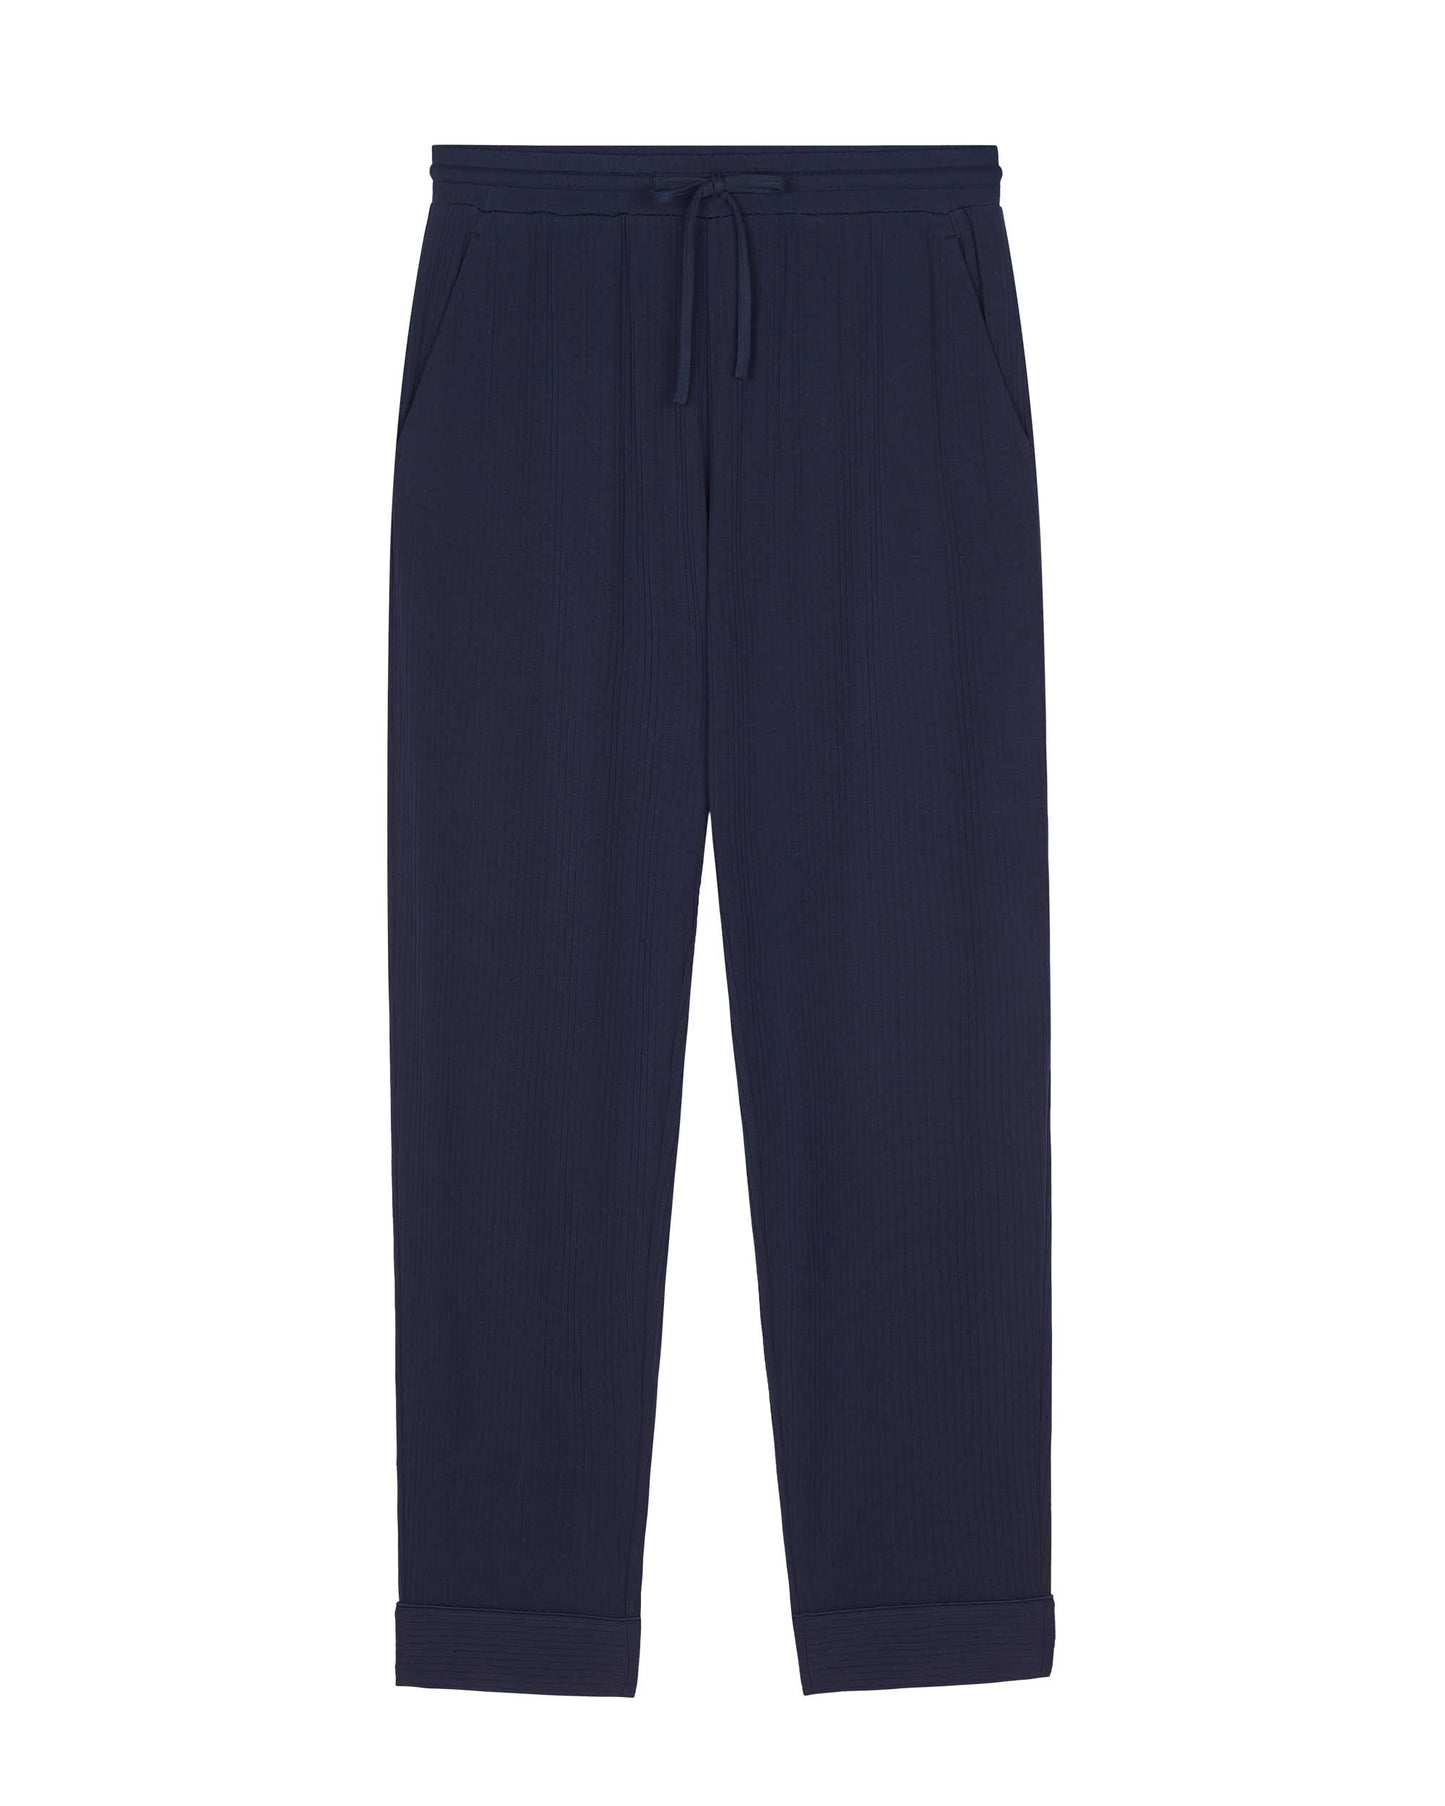 flat lay of navy pajama pants